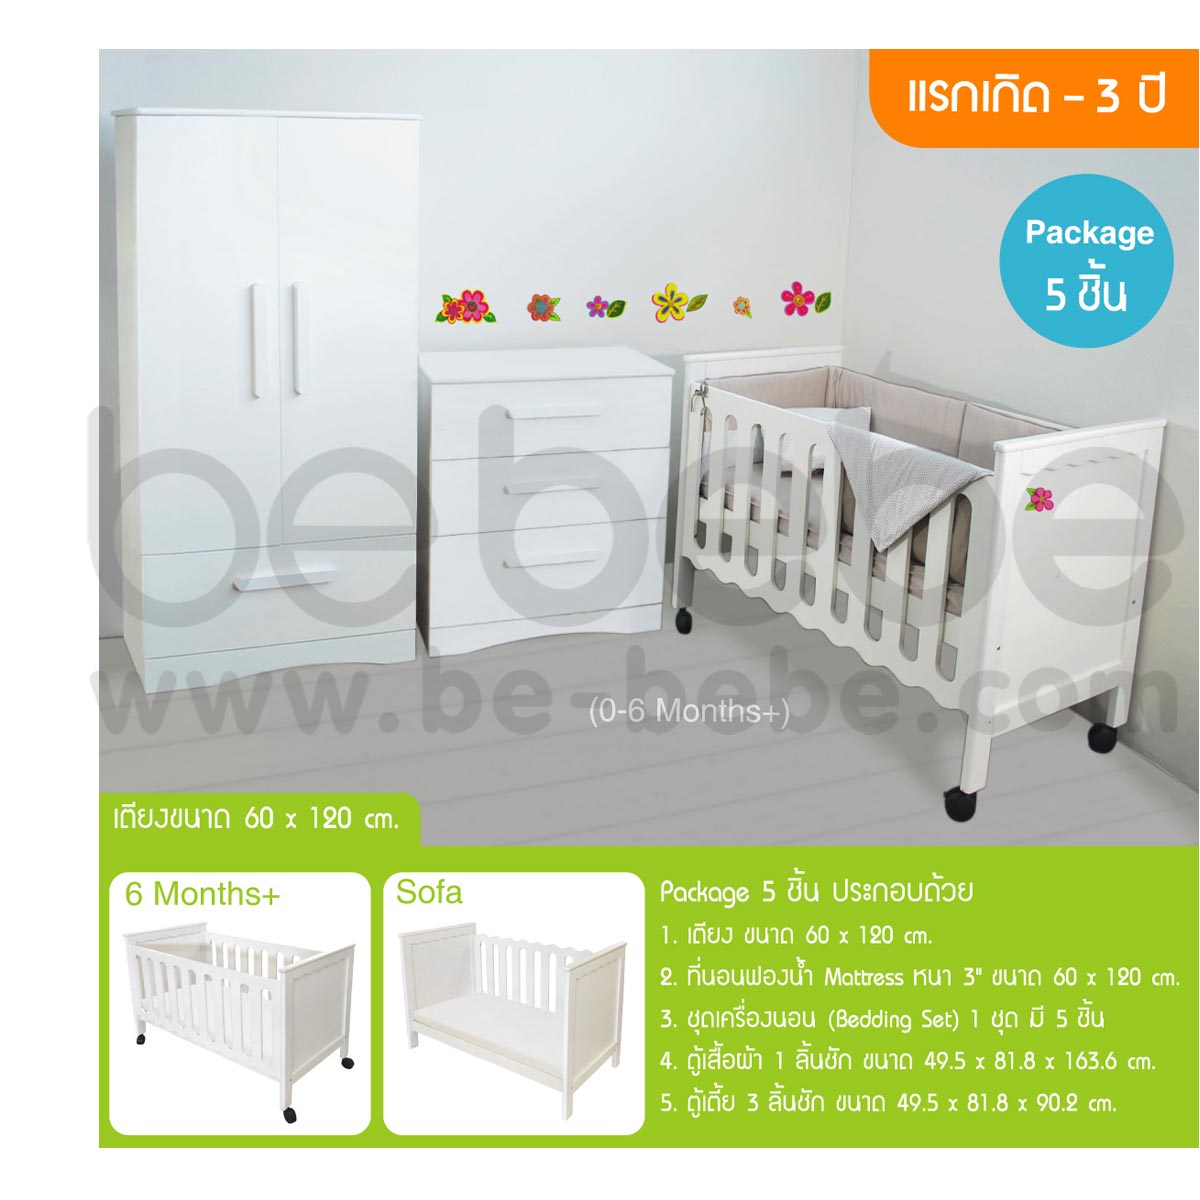 be bebe :ชุดเตียงเด็กแรกเกิด-3ปี (60x120)ปรับเป็นโซฟาได้+ที่นอนฟองน้ำ+ชุดเครื่องนอน+ตู้เสื้อผ้า+ตู้เตี้ย /ขาว